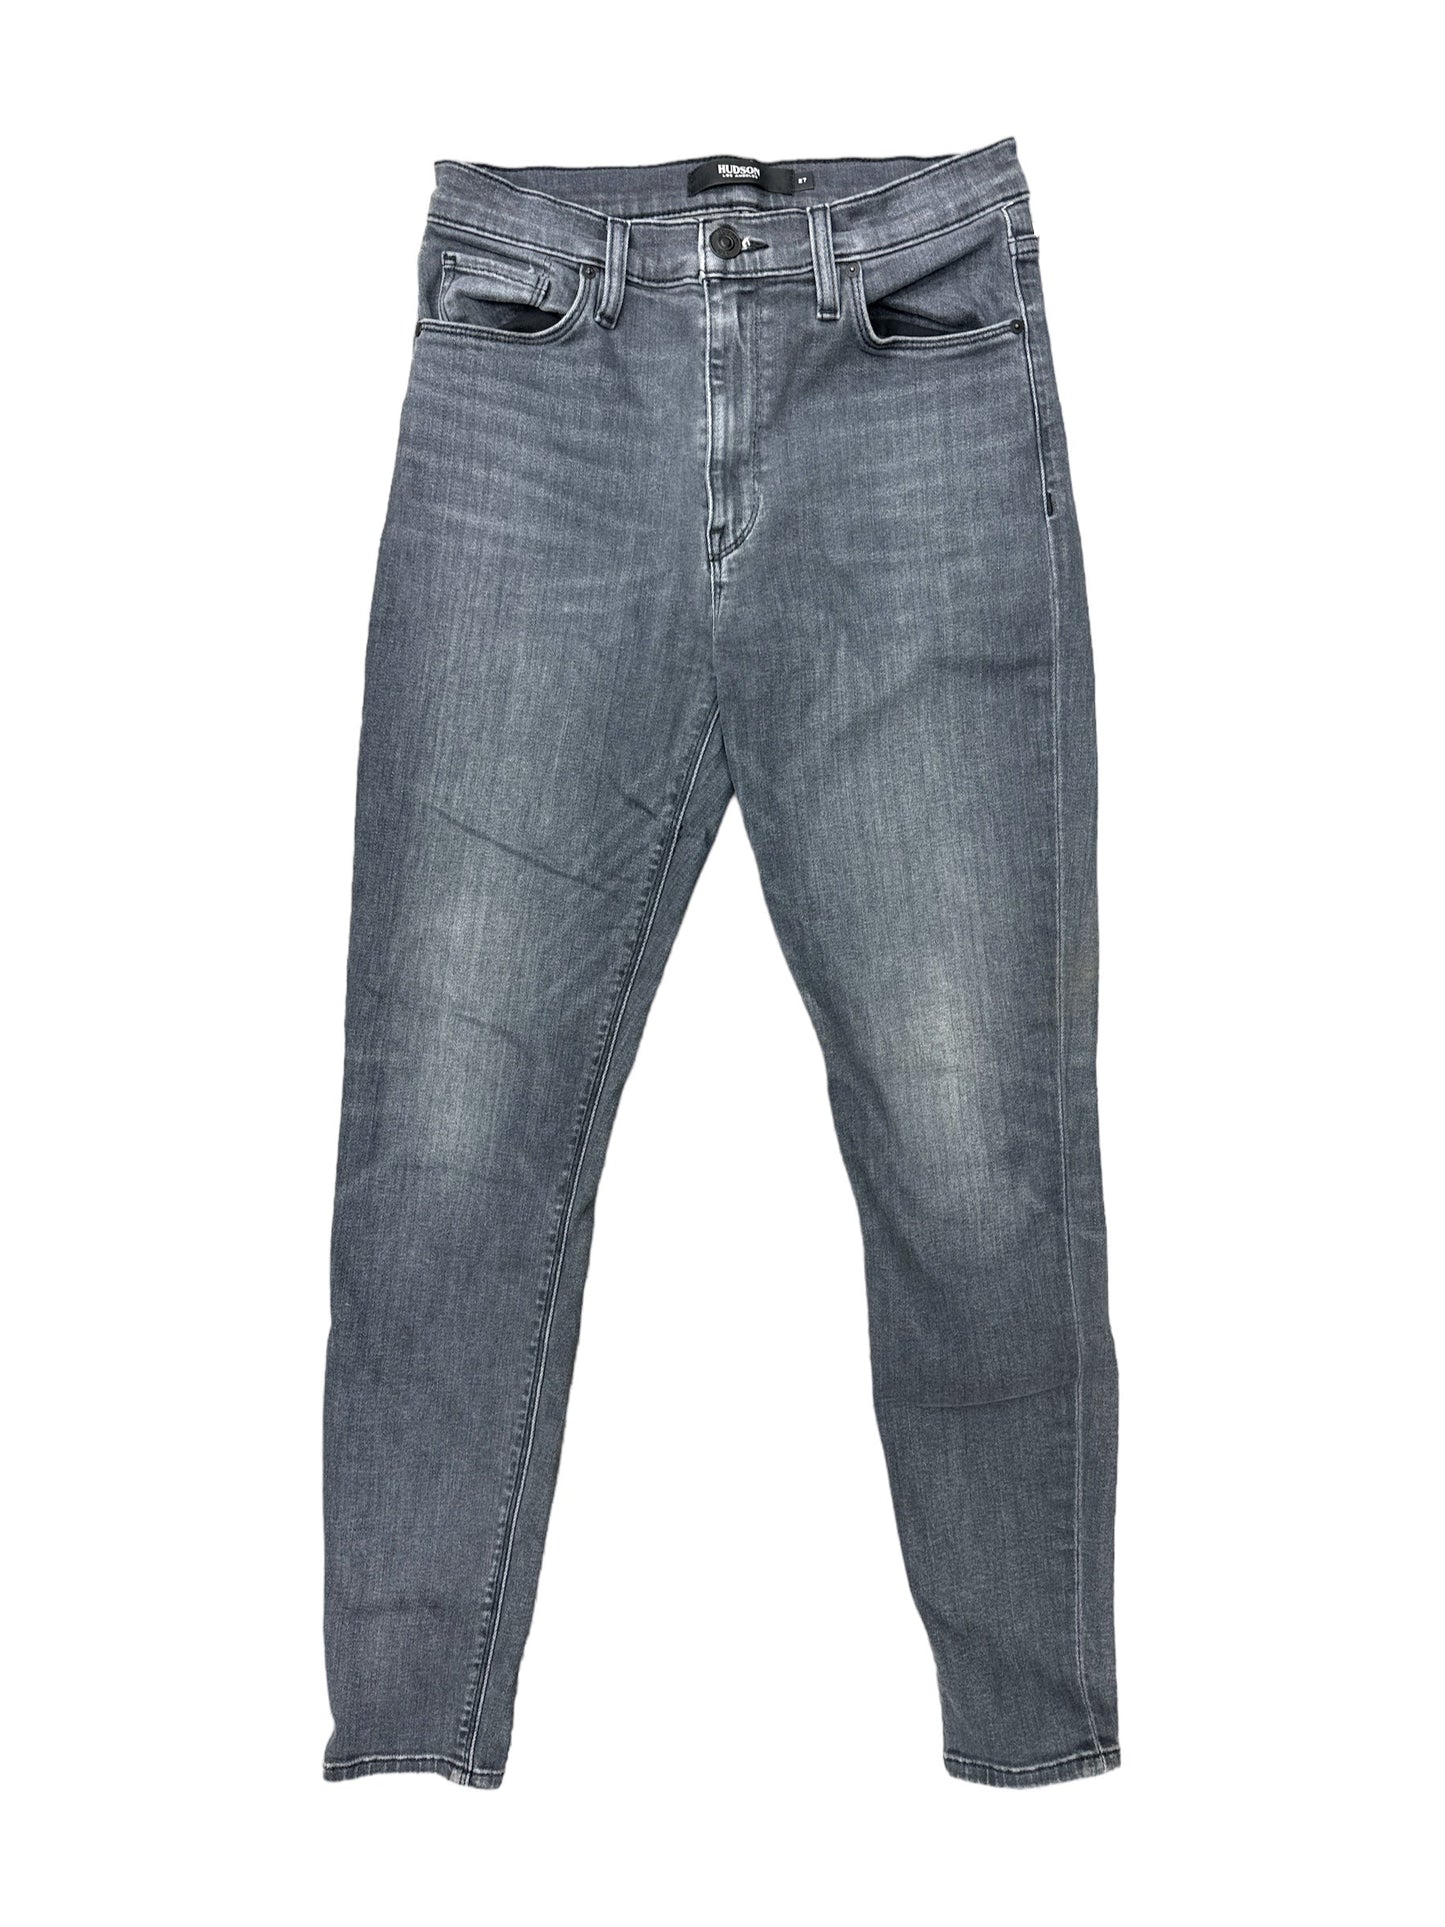 Grey Pants Designer Hudson, Size 4